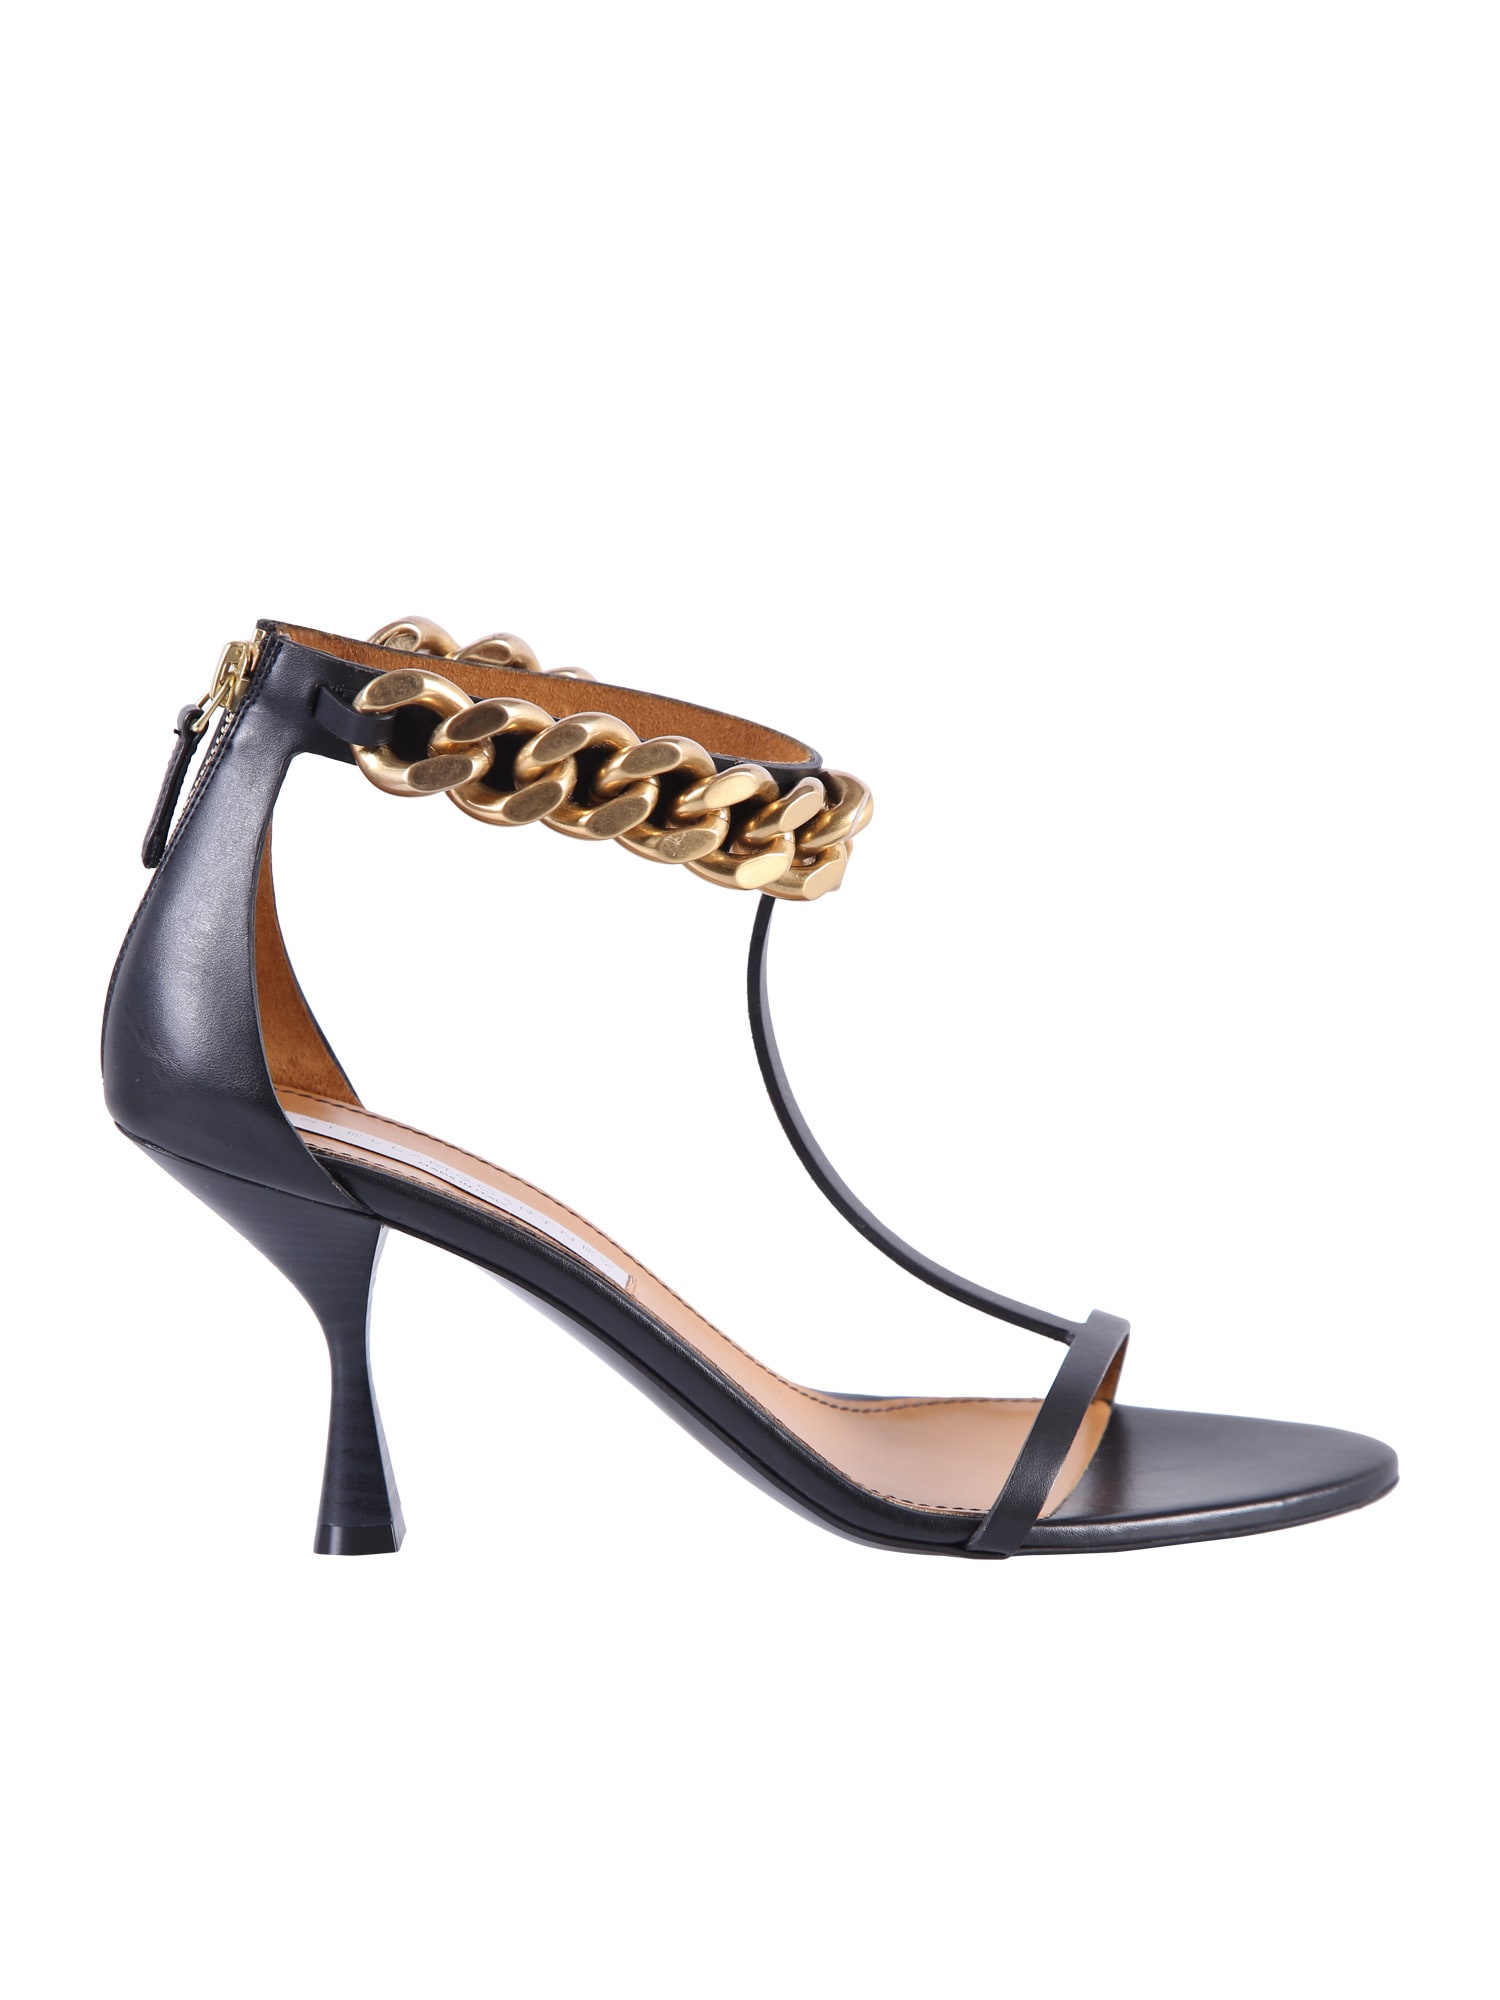 Stella McCartney Chain Detail Sandals